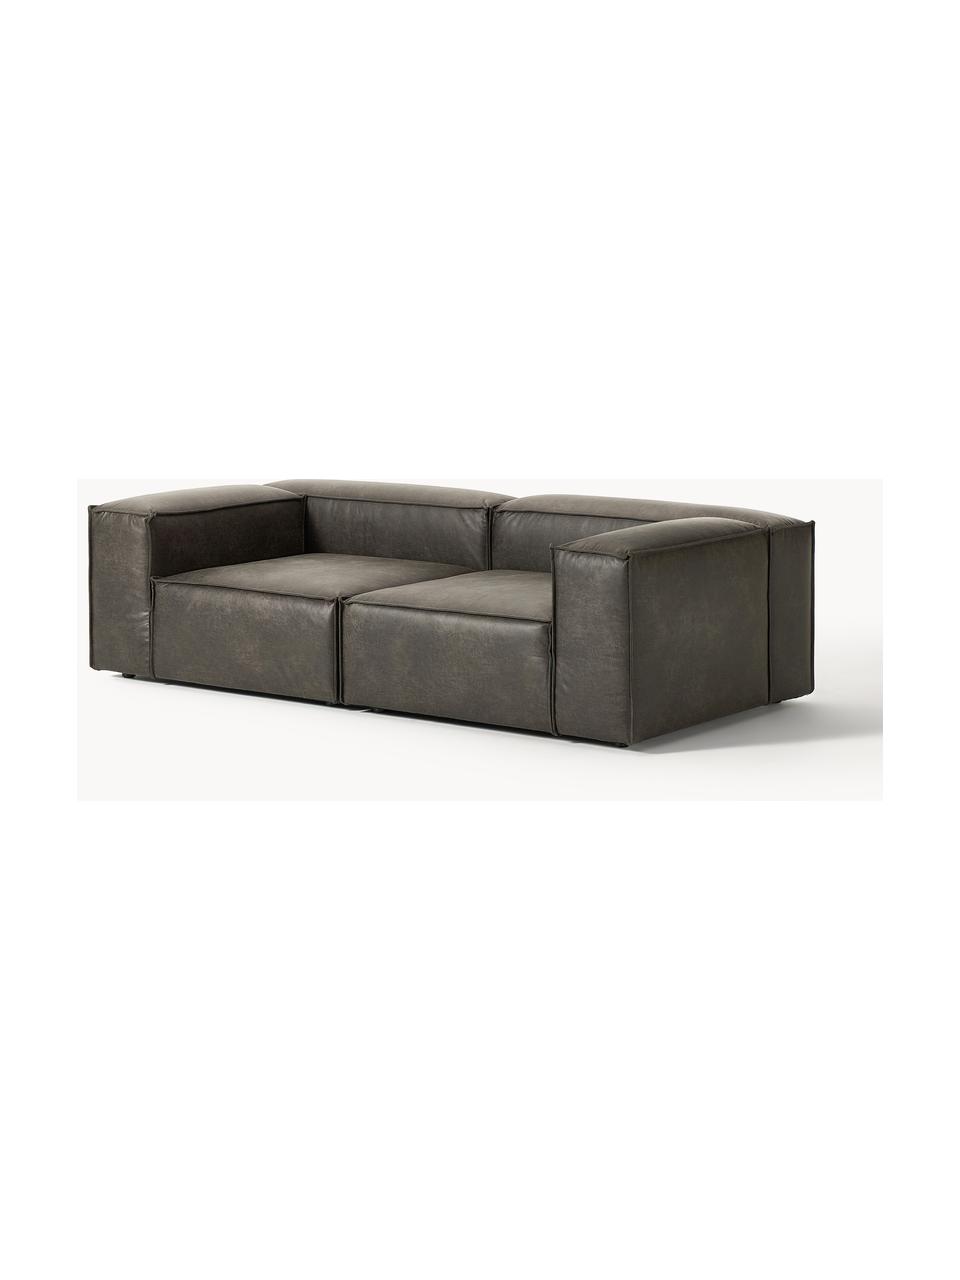 Modulares Sofa Lennon (3-Sitzer) aus recyceltem Leder, Bezug: Recyceltes Leder (70 % Le, Gestell: Massives Holz, Sperrholz, Leder Taupe, B 238 x T 119 cm